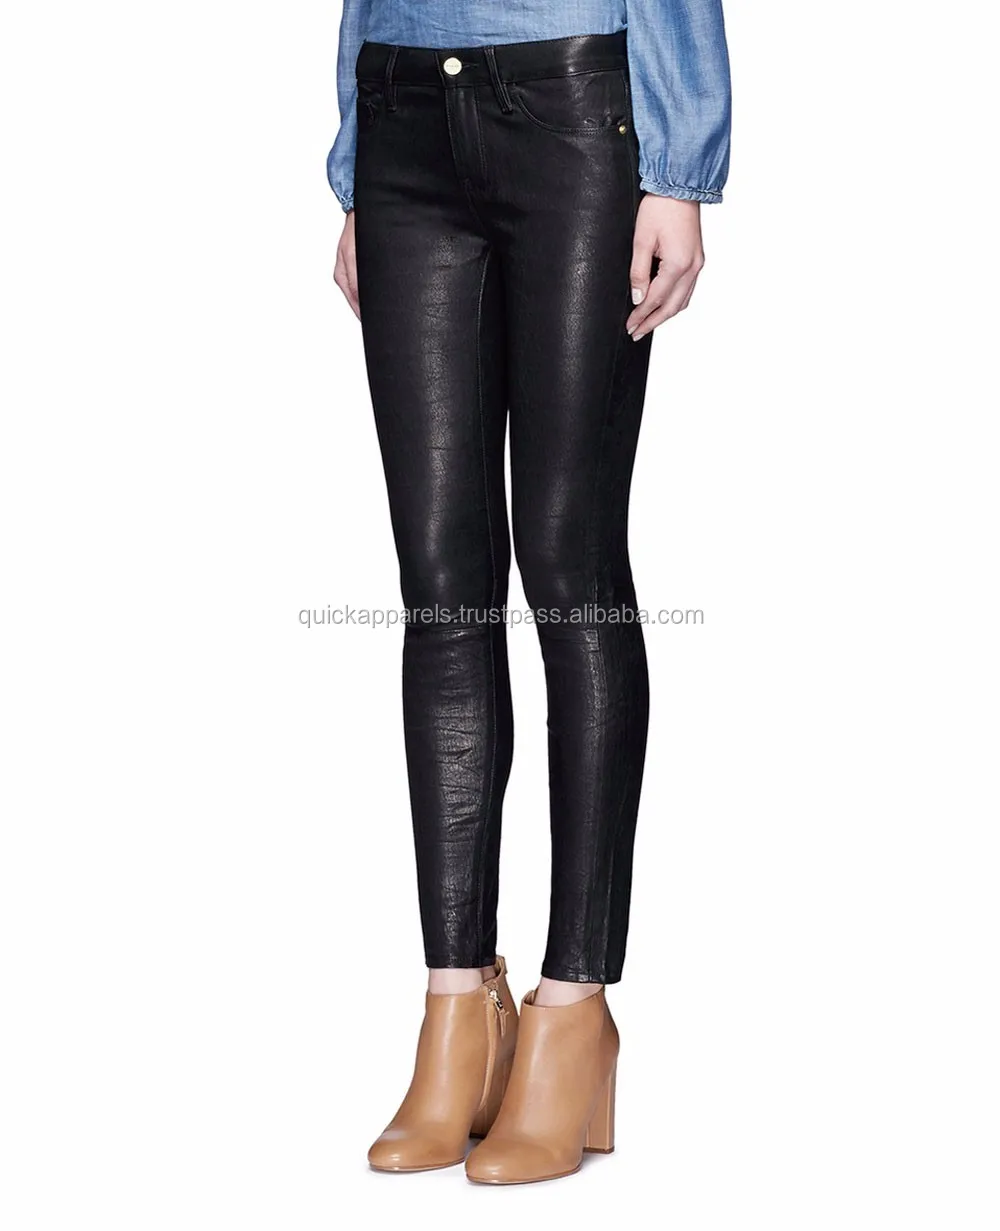 New Design Black Pu Leather Look Skinny Slim Women's Slim Pants - Buy ...